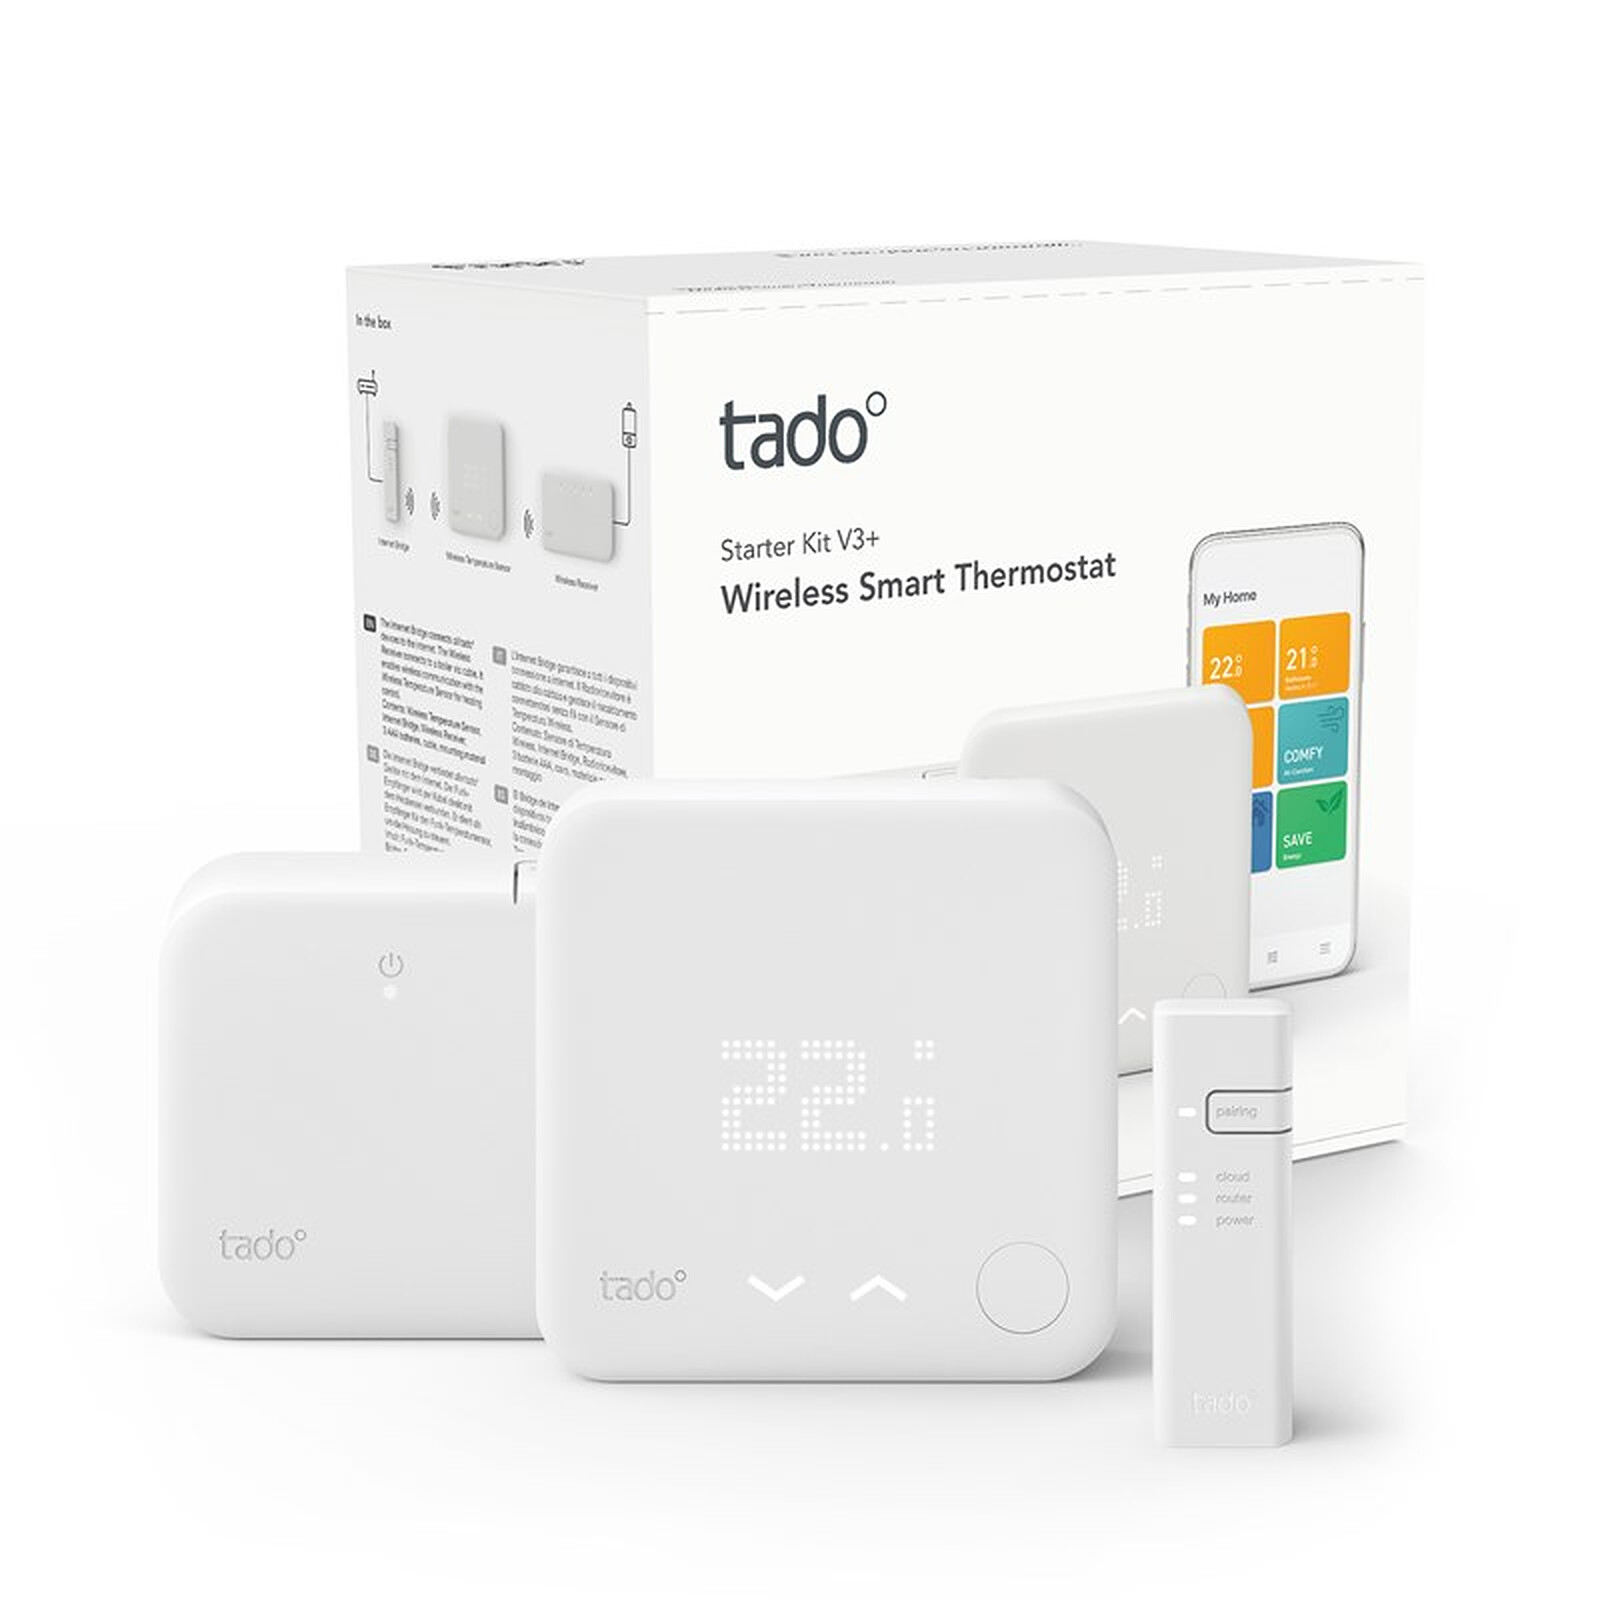 Thermostat connecté : le kit de démarrage Tado V3+ est bradé à -43%